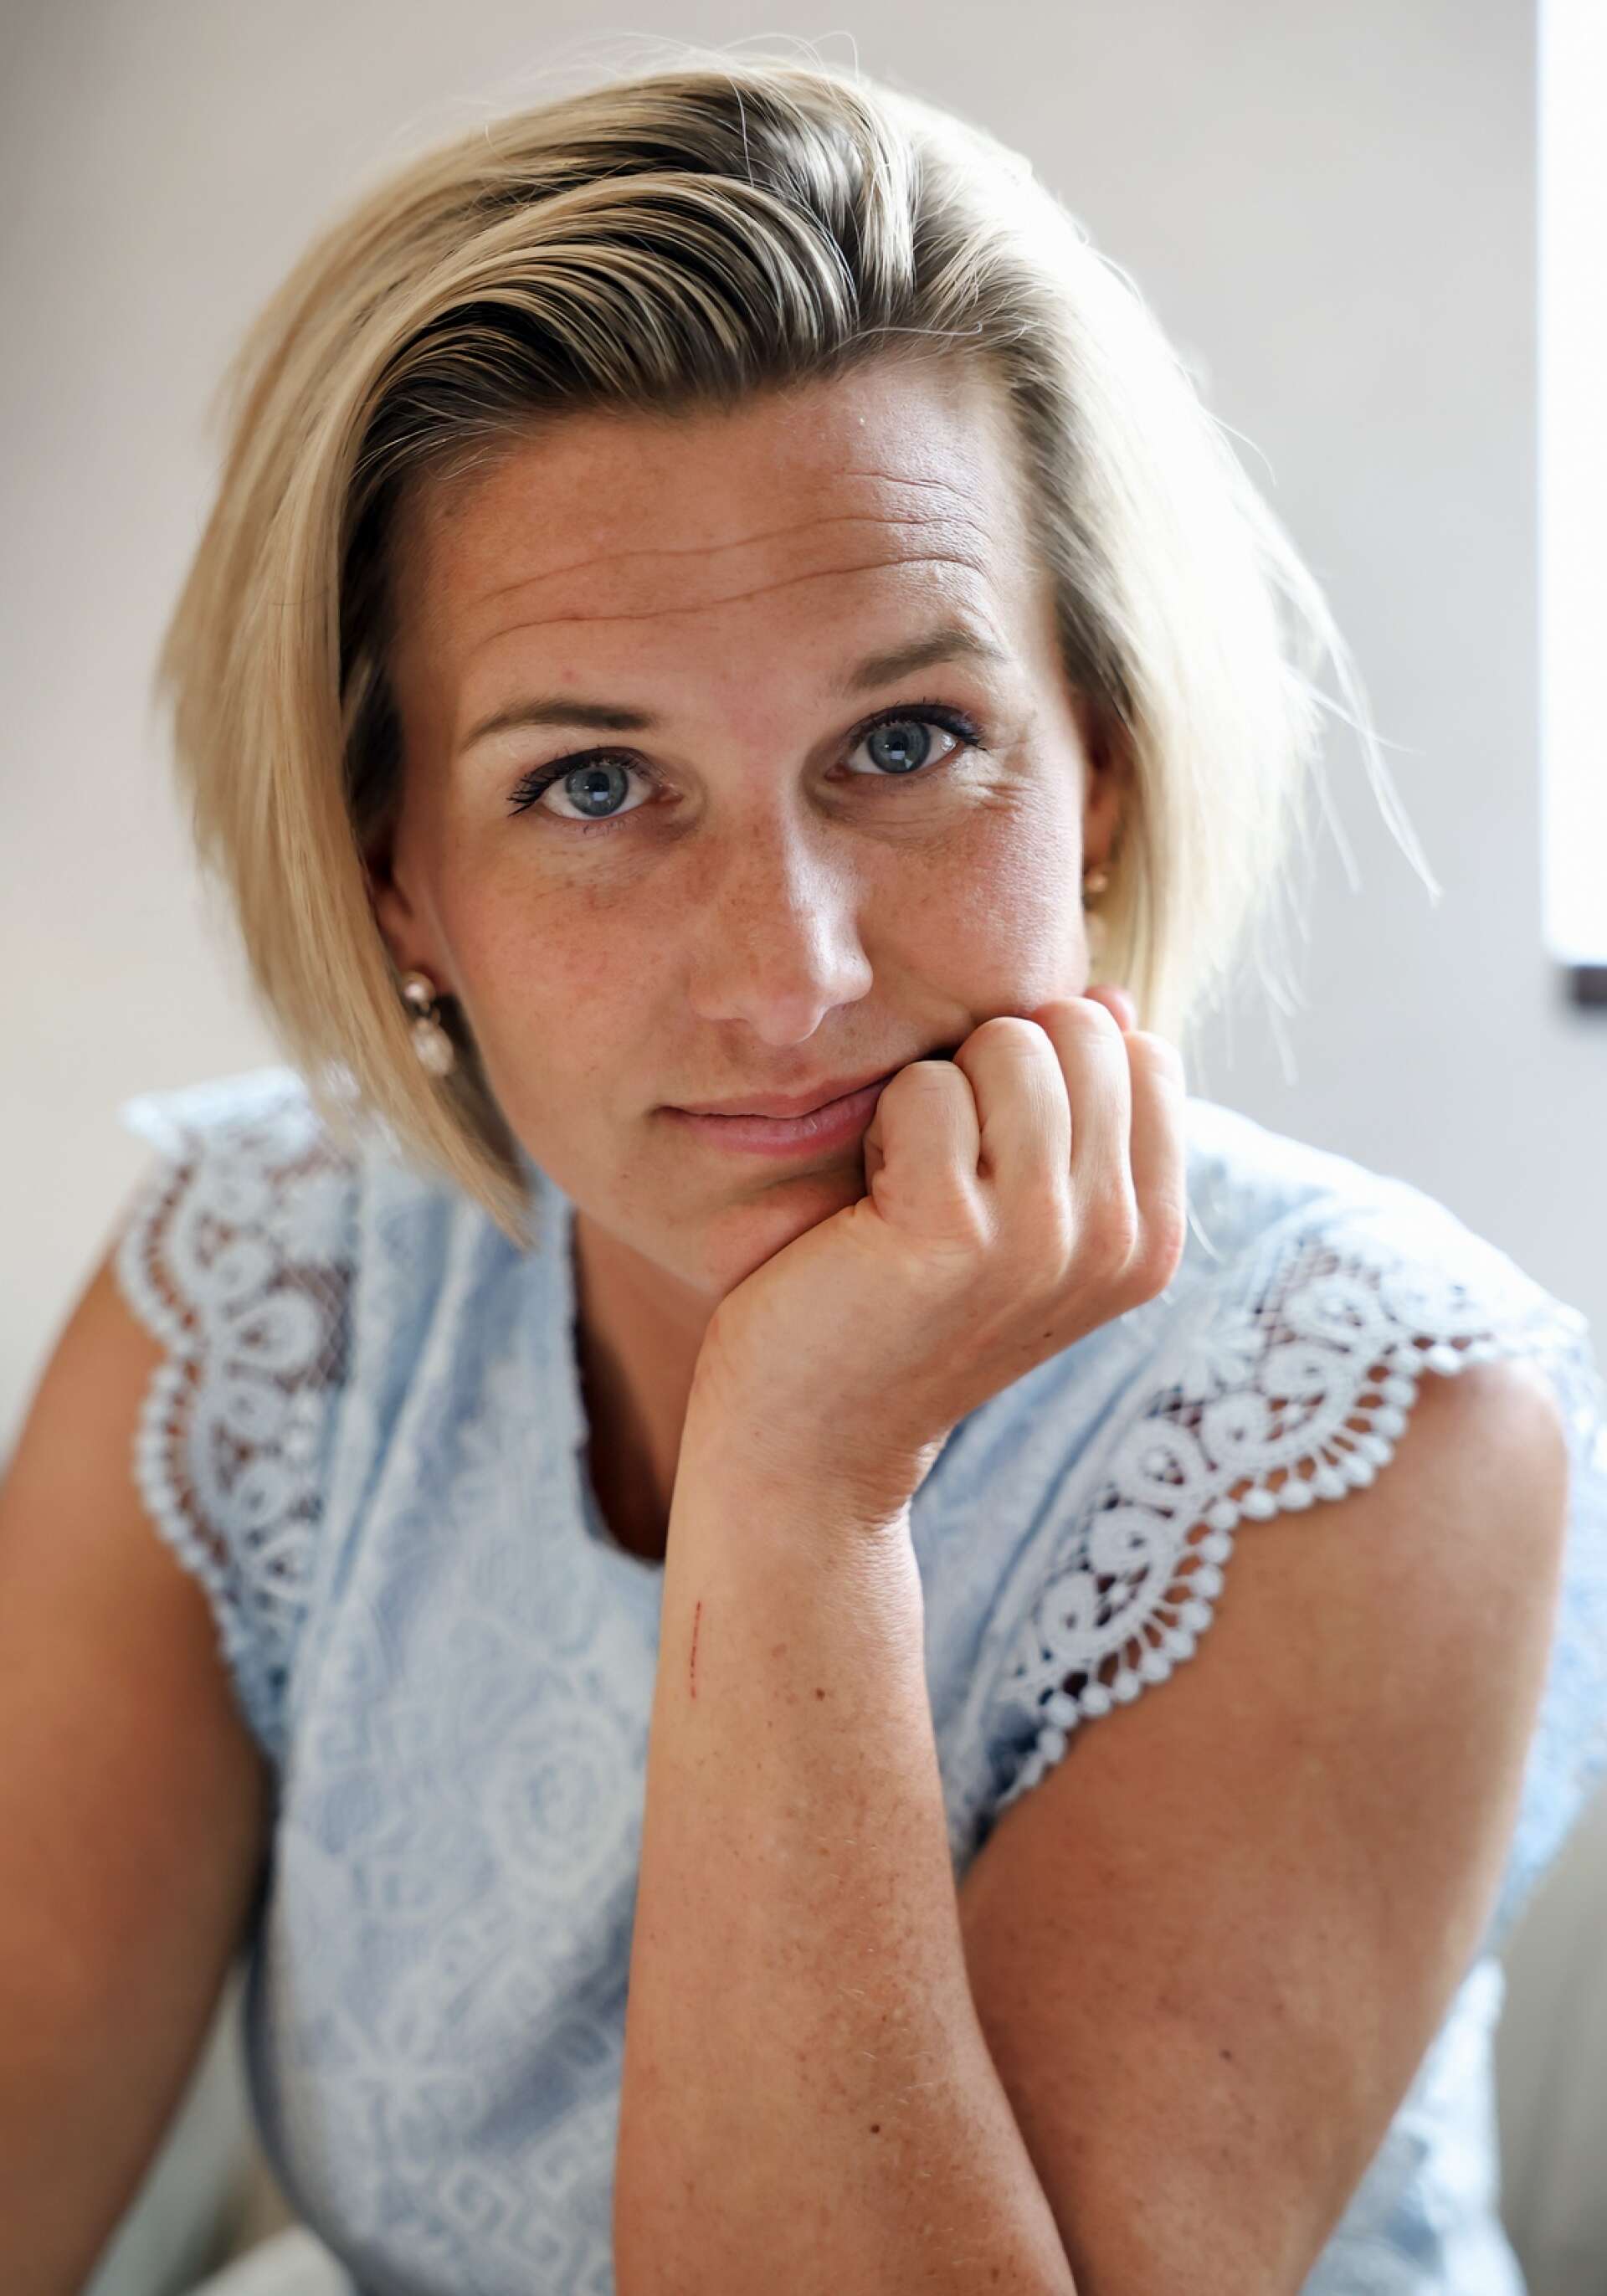 Sandra Torbjörnsdotter från Lidköping har erfarenheter av att känna en djup ensamhetskänsla – trots sitt till synes framgångsrika liv. Den 25 april medverkar hon och Suzanne Pärlhamn i TV4:s morgonsoffa för att berätta om boken ”Kan vi prata om ensamhet?”.